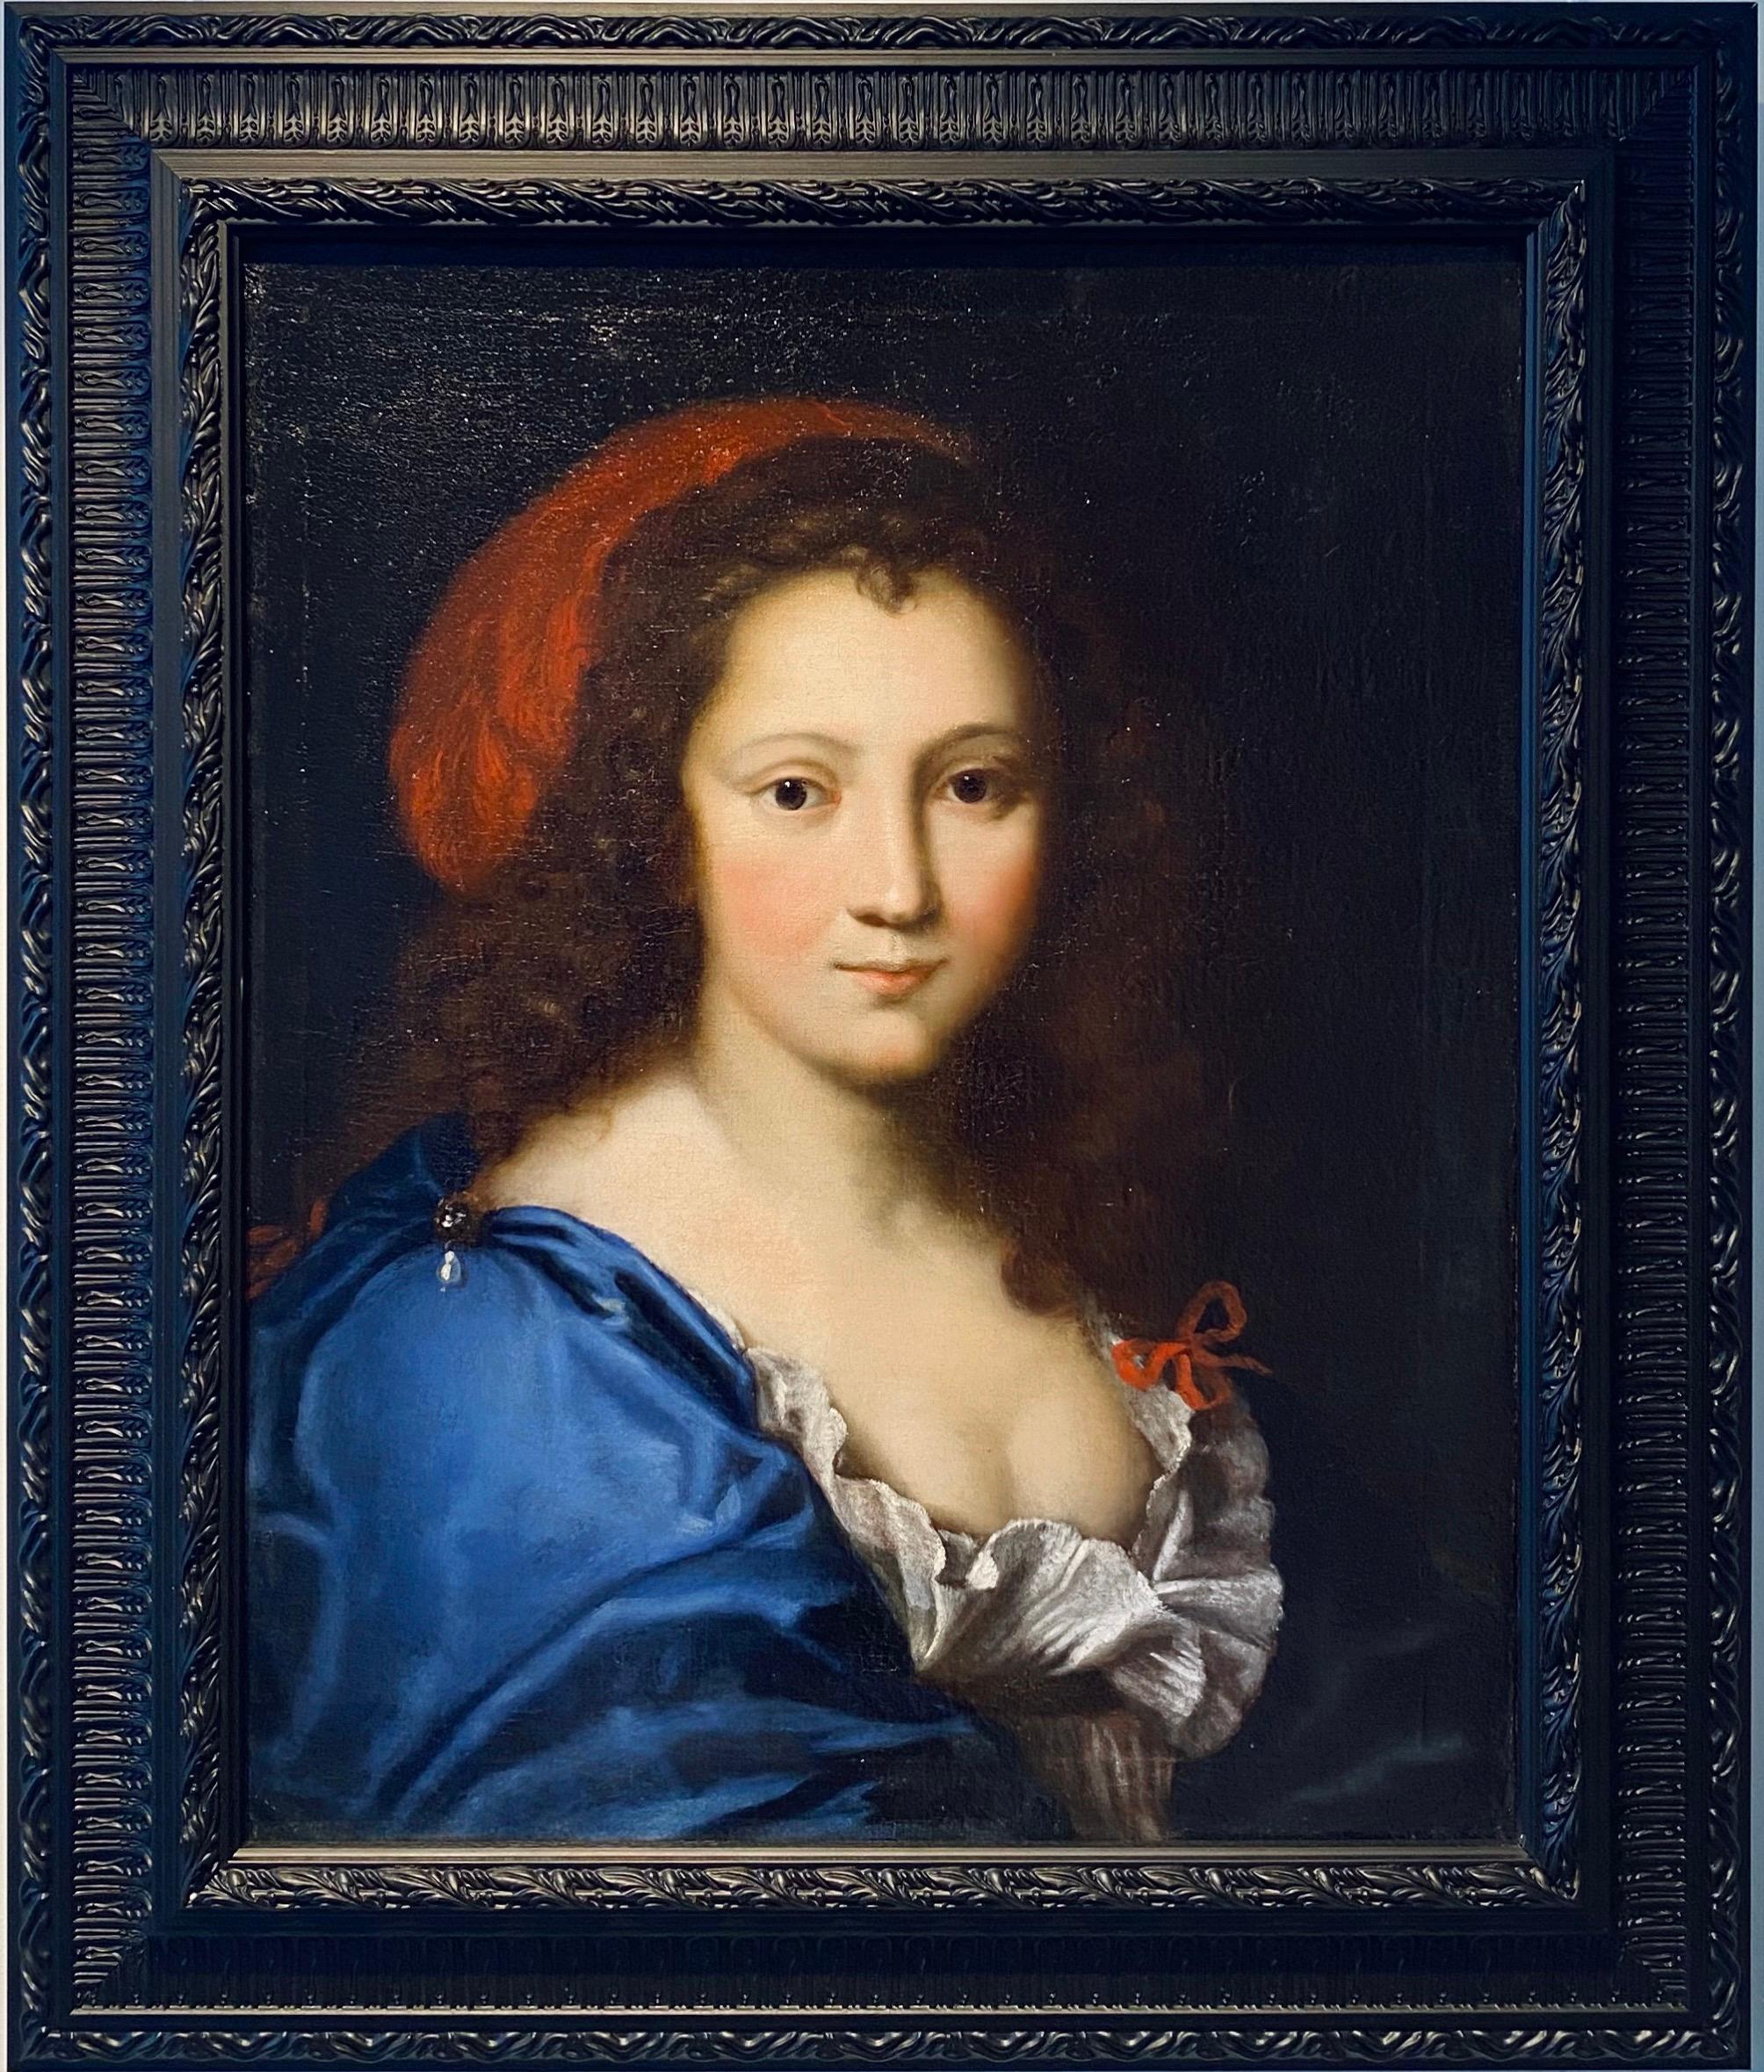 Nicolas Mignard (workshop of) Portrait Painting - 17th century French Portrait of Armande Béjart - Molière - actress lady 